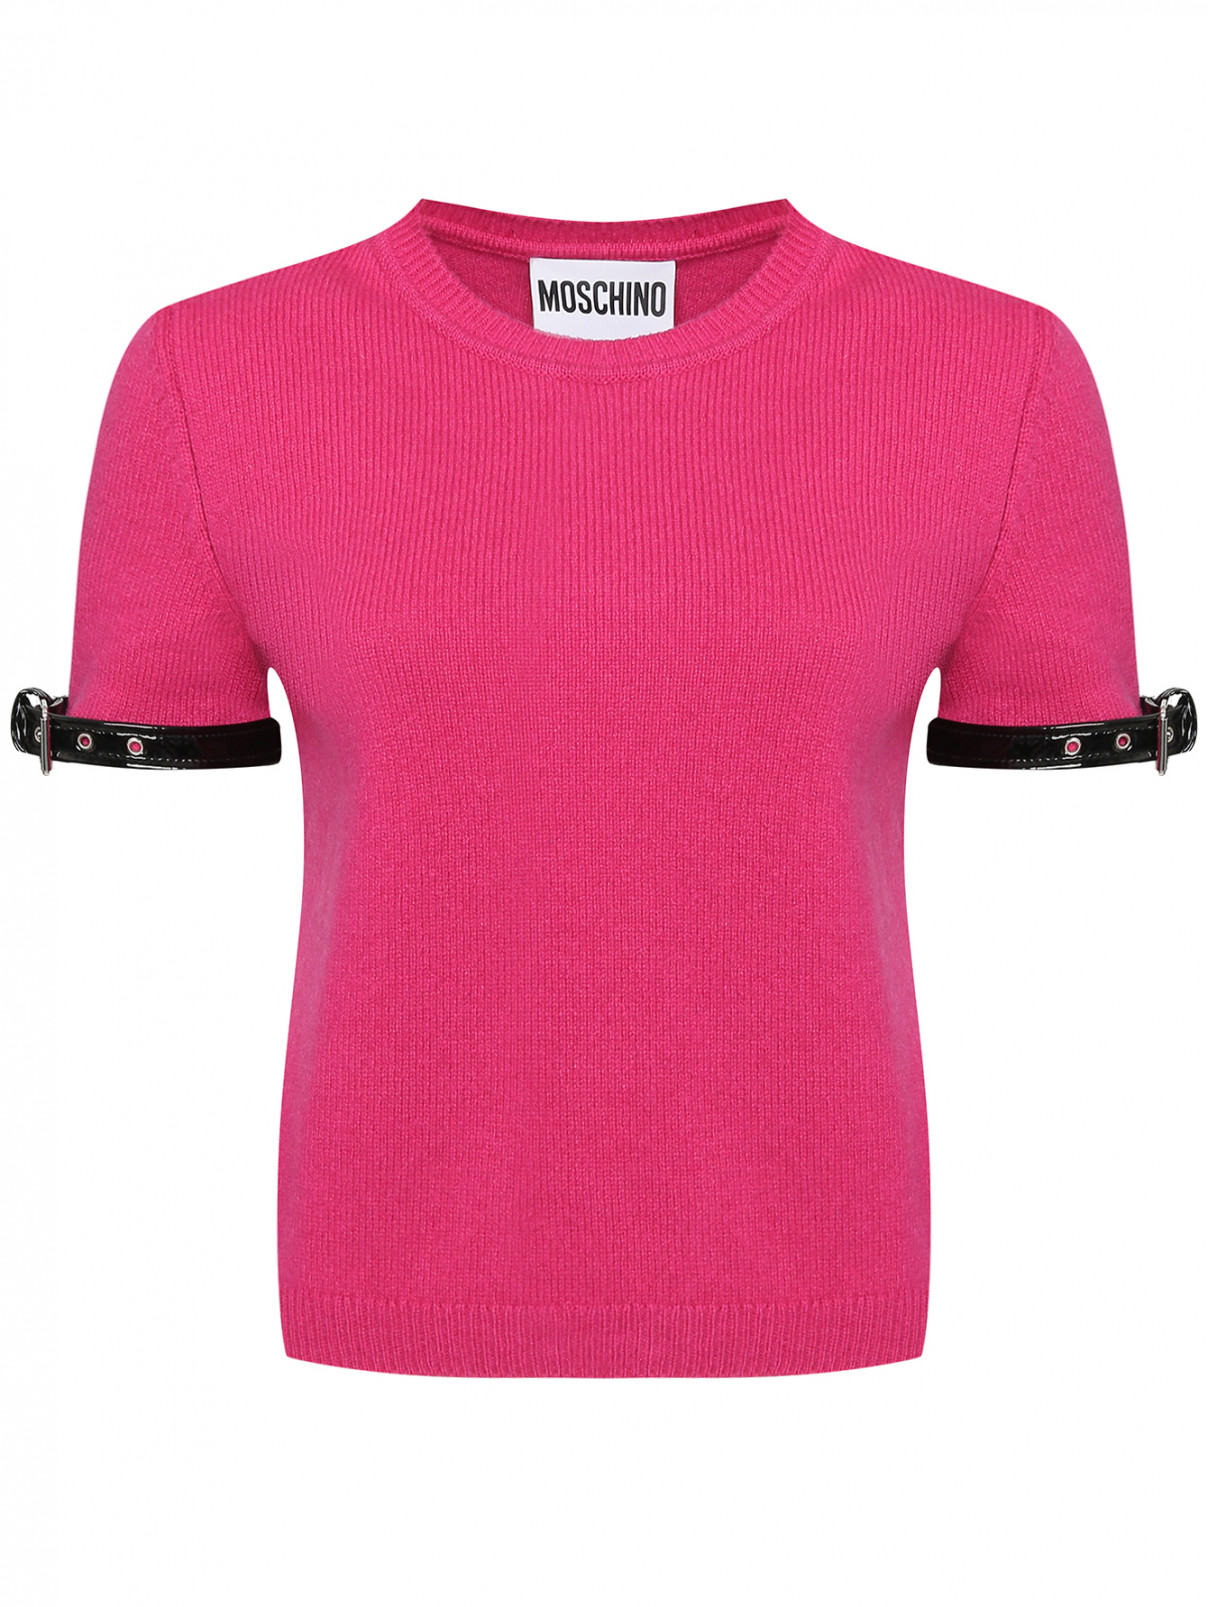 Джемпер с декором на рукавах Moschino  –  Общий вид  – Цвет:  Розовый